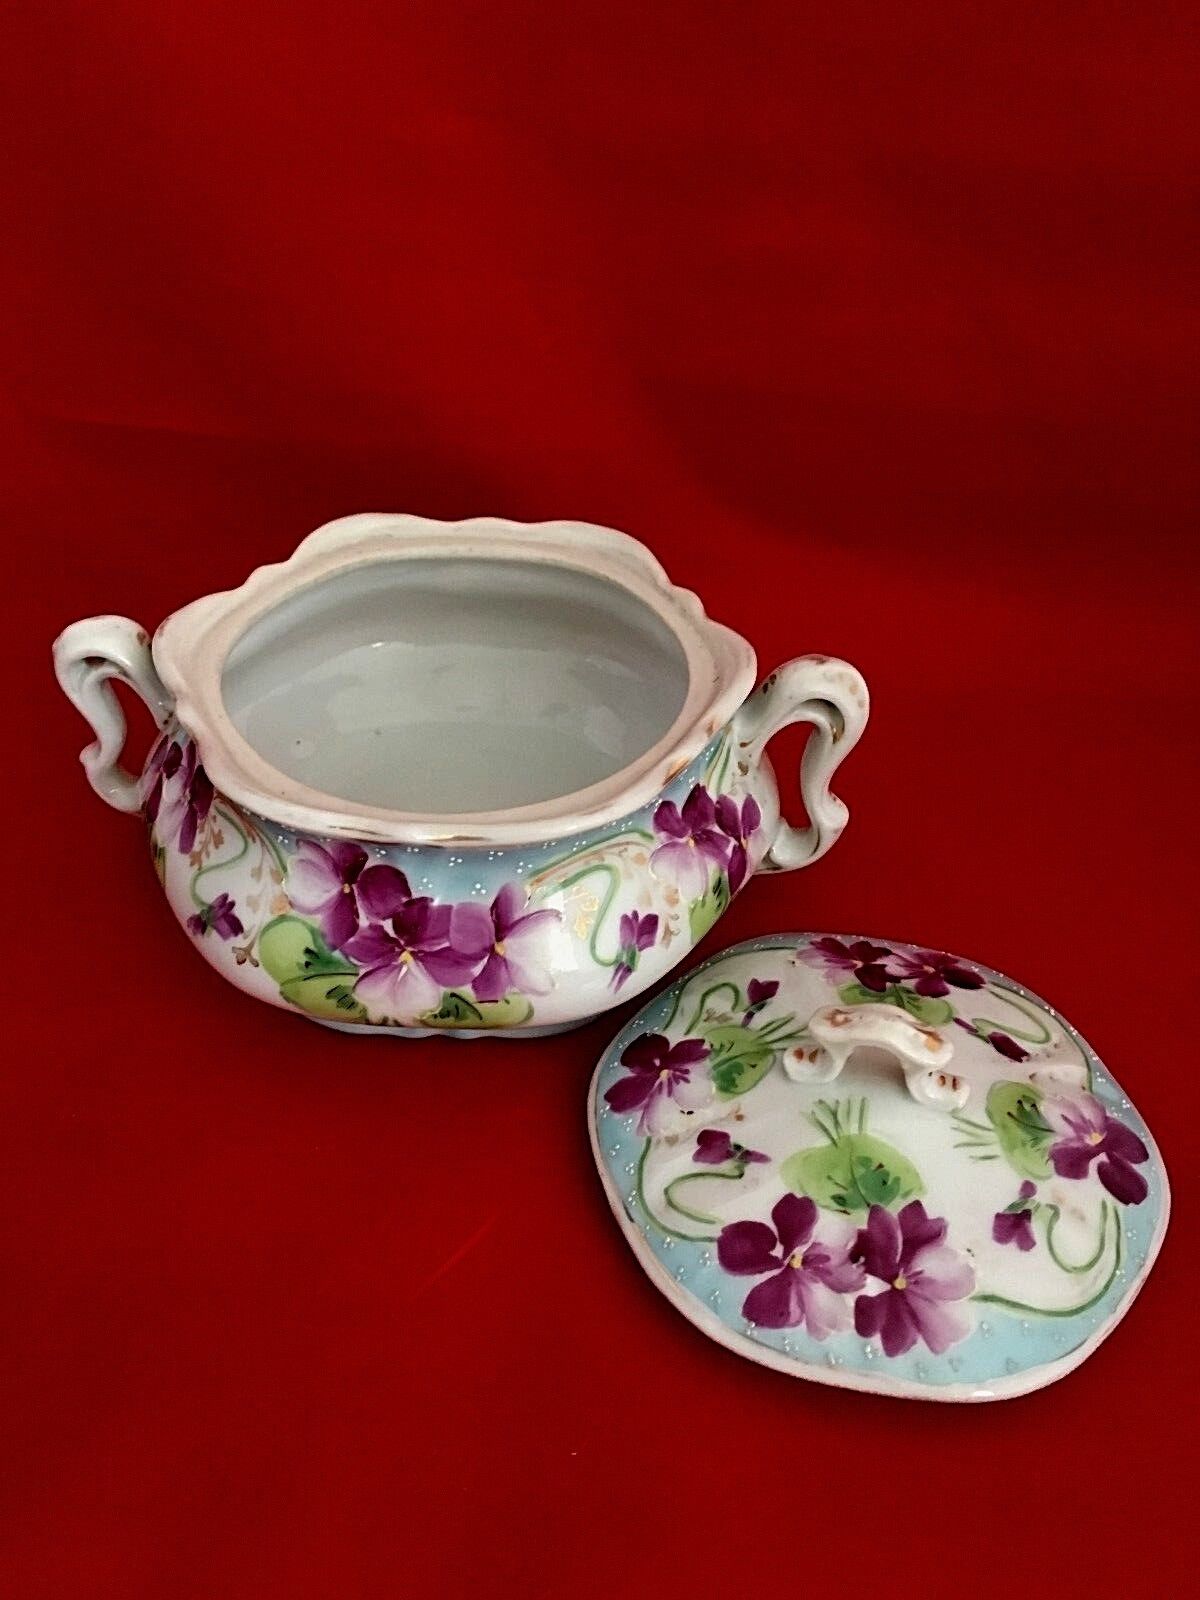 Antique Nippon Bowl Lidded with under plate cobalt edged floral violets design Без бренда - фотография #5